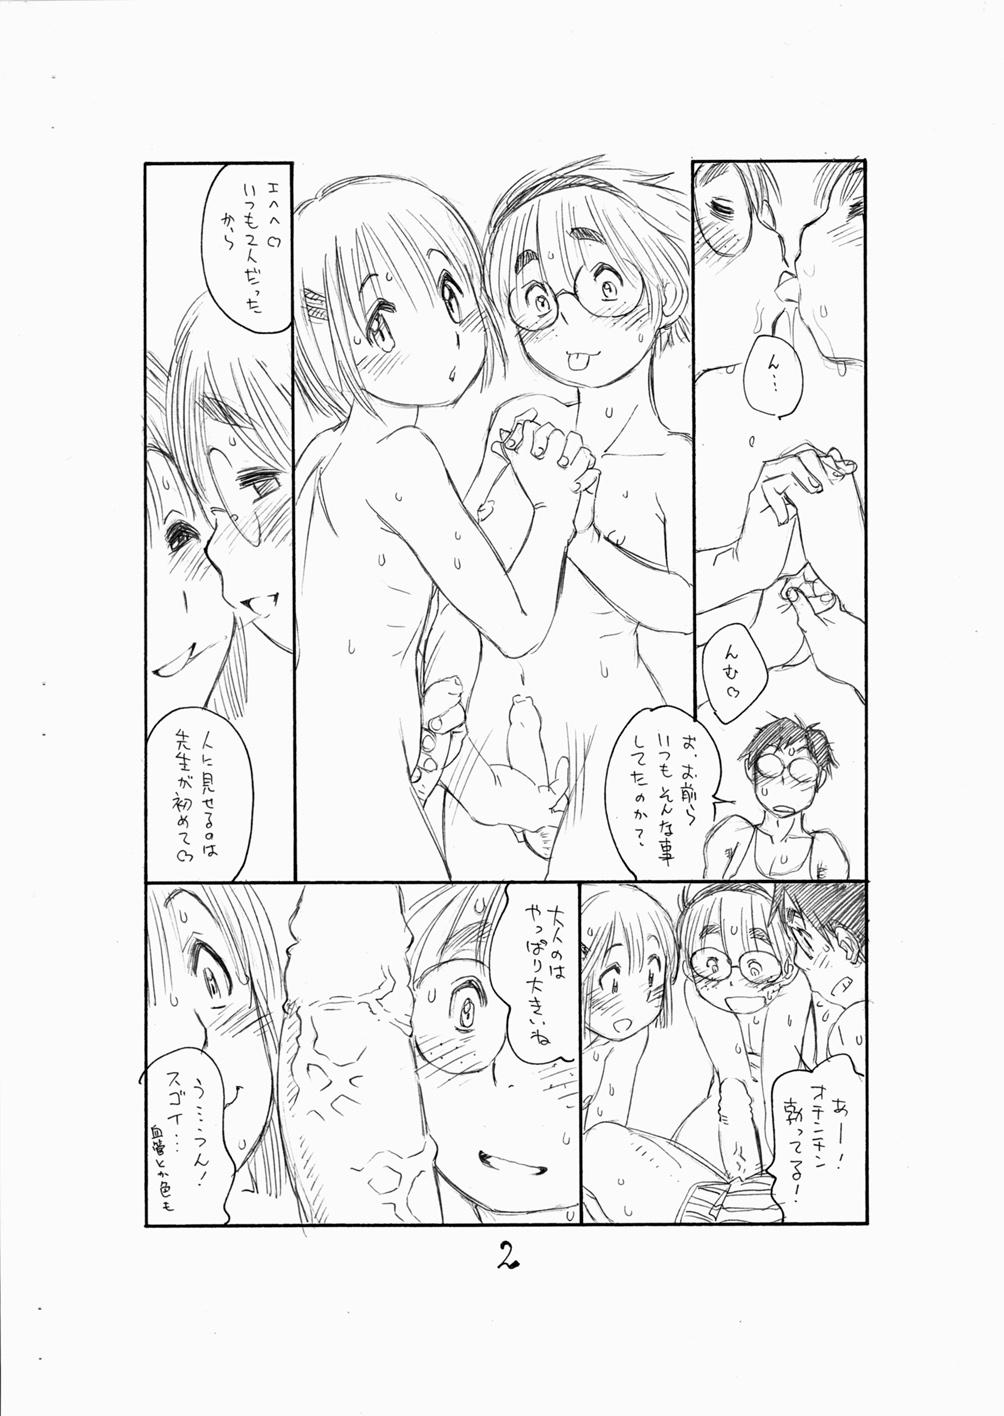 Tiny Titties Bokutachi Otokonoko 3 - Hourou musuko Skirt - Page 4